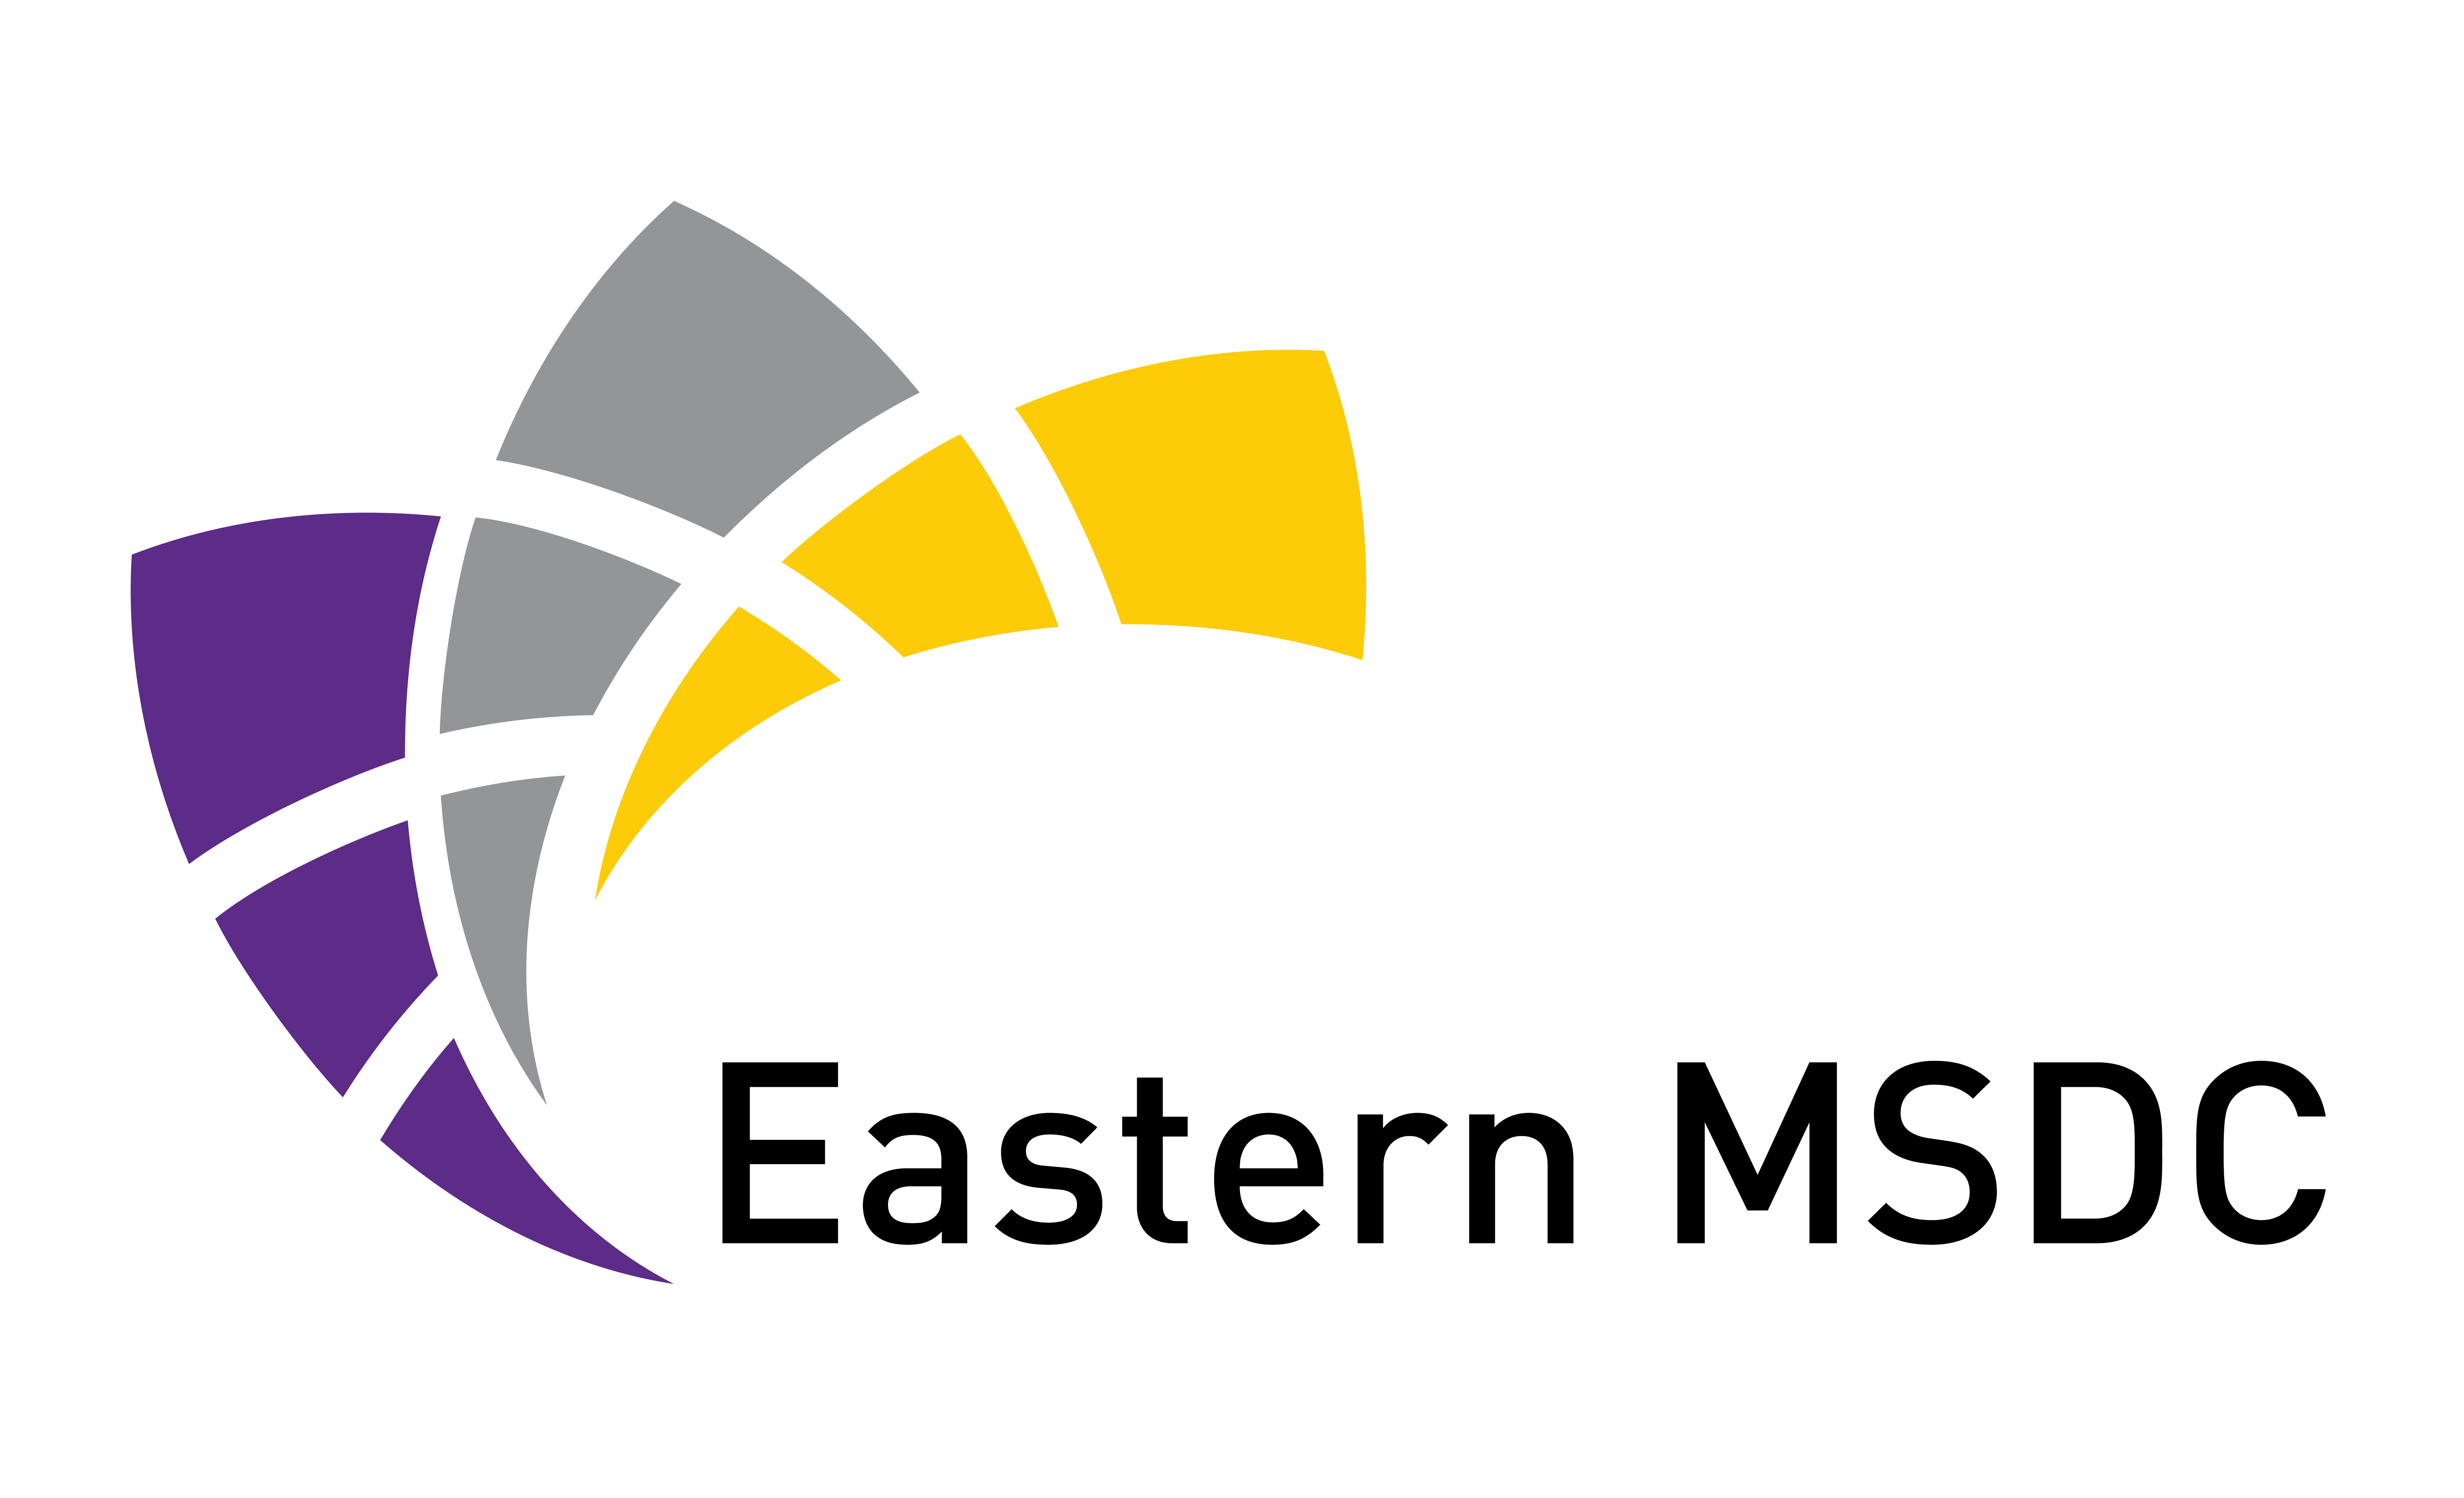 Eastern MSDC